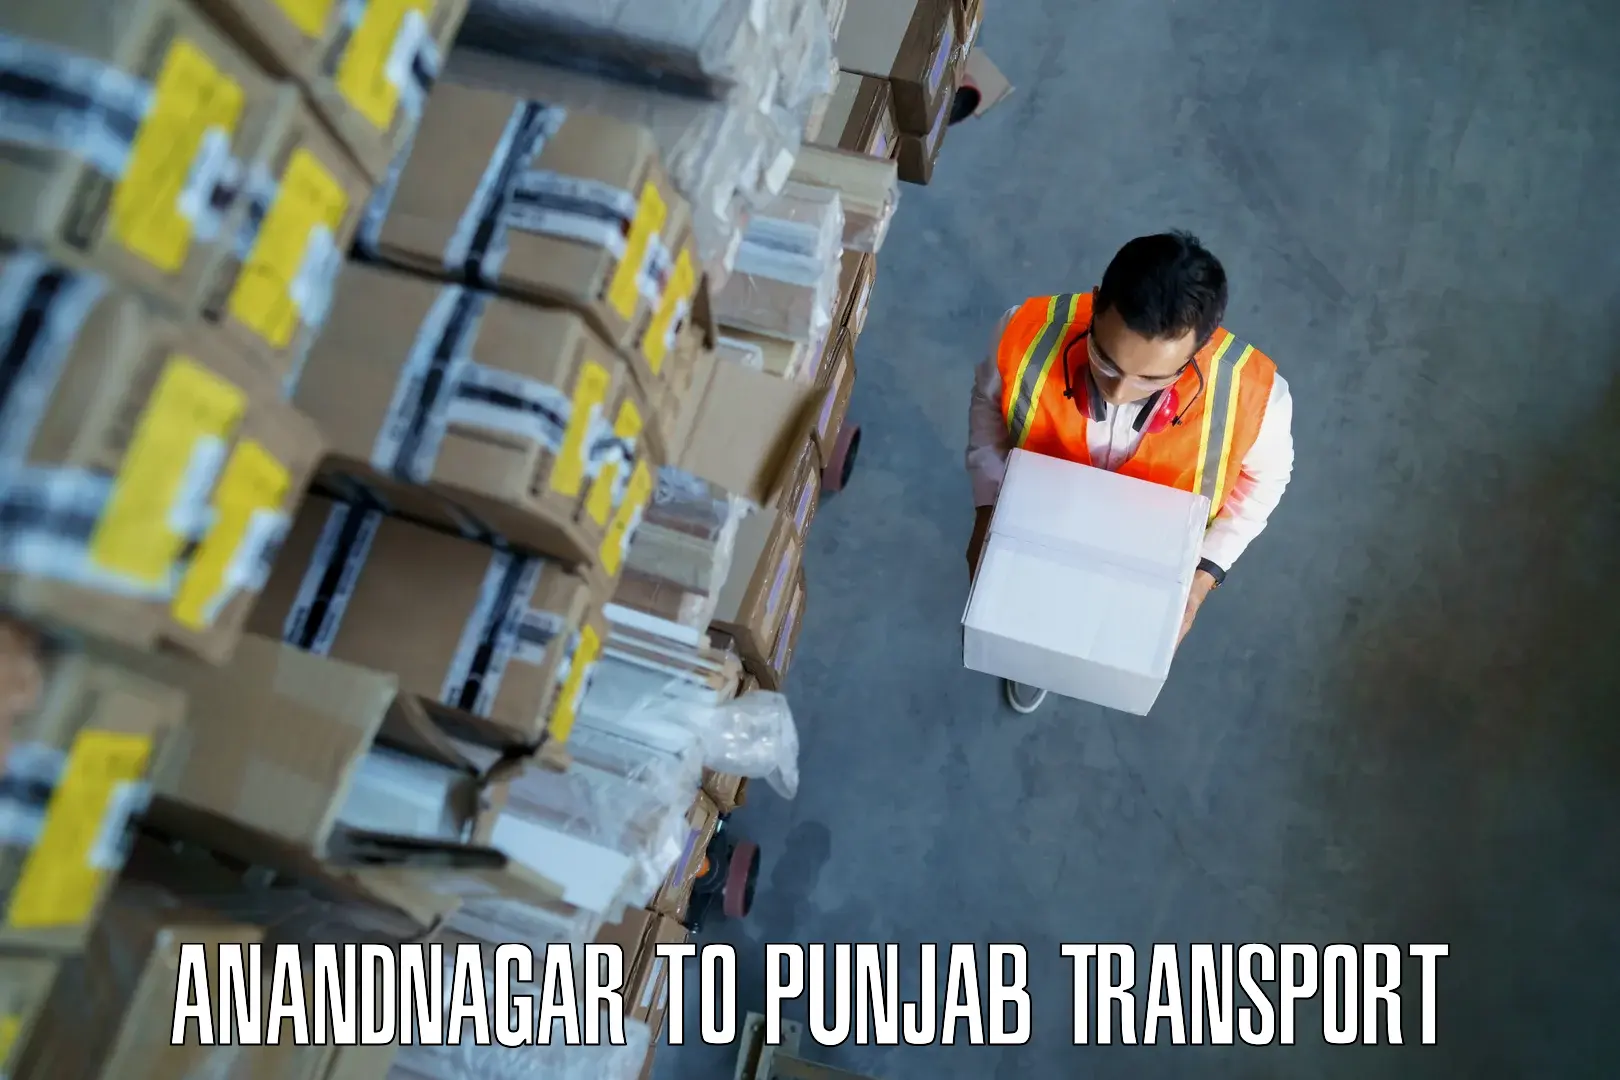 Commercial transport service Anandnagar to Dinanagar